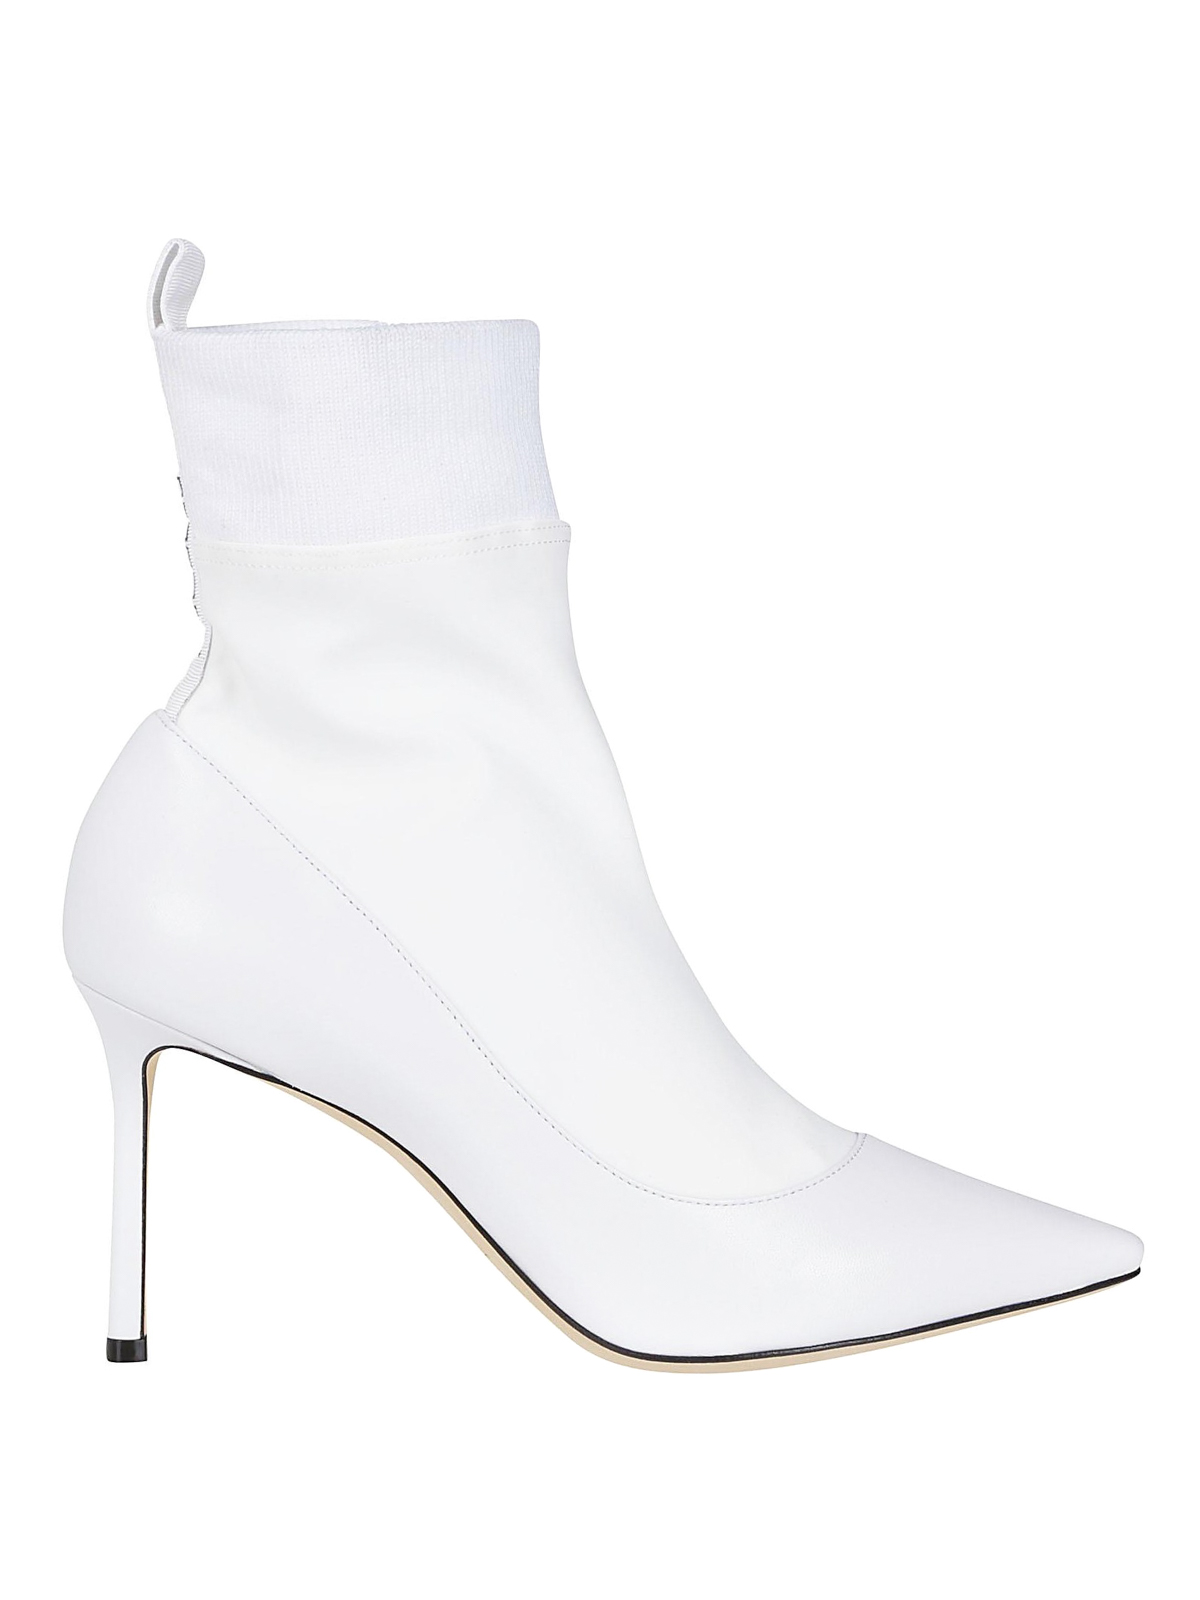 white sock boot heels